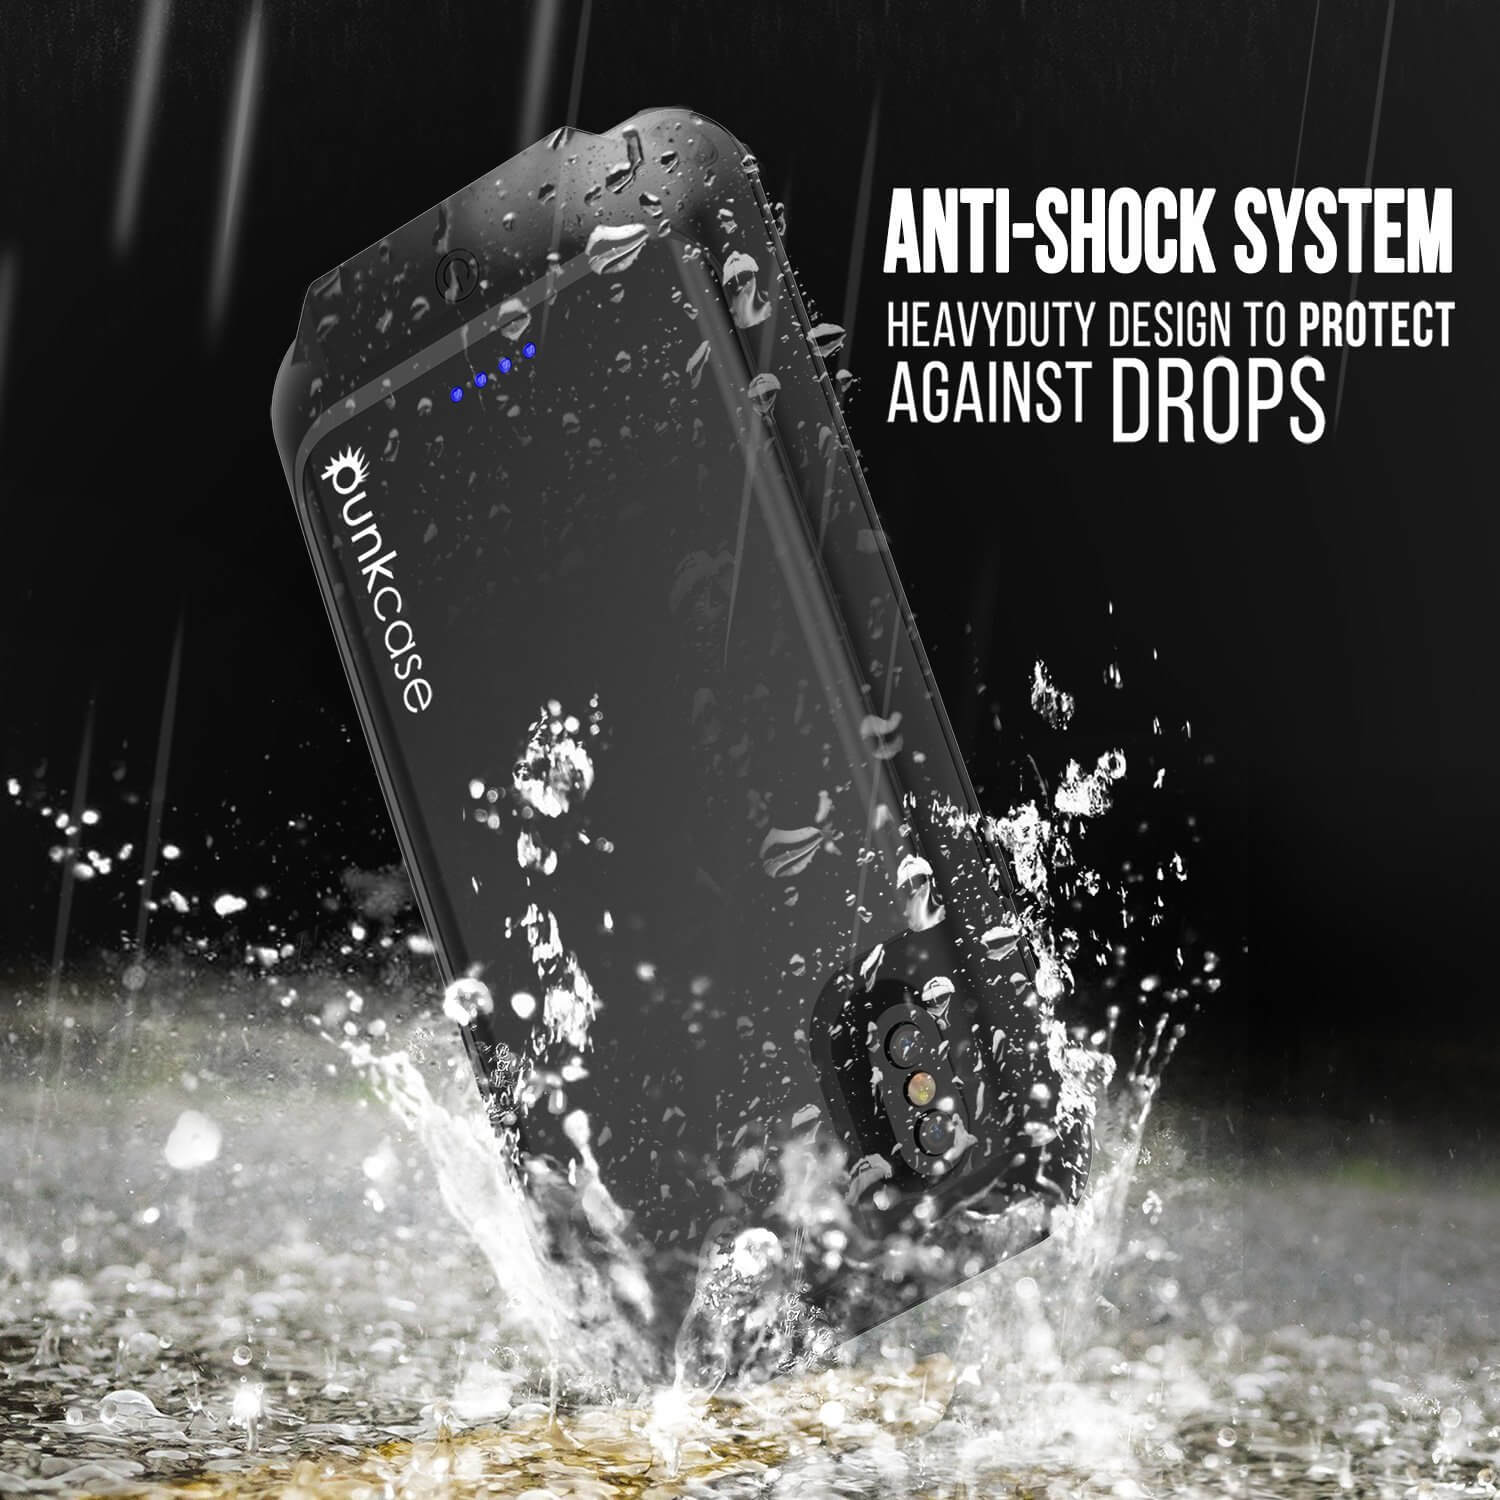 PunkJuice iPhone X Battery Case, Waterproof, IP68 Certified [Ultra Slim] [Black] - PunkCase NZ